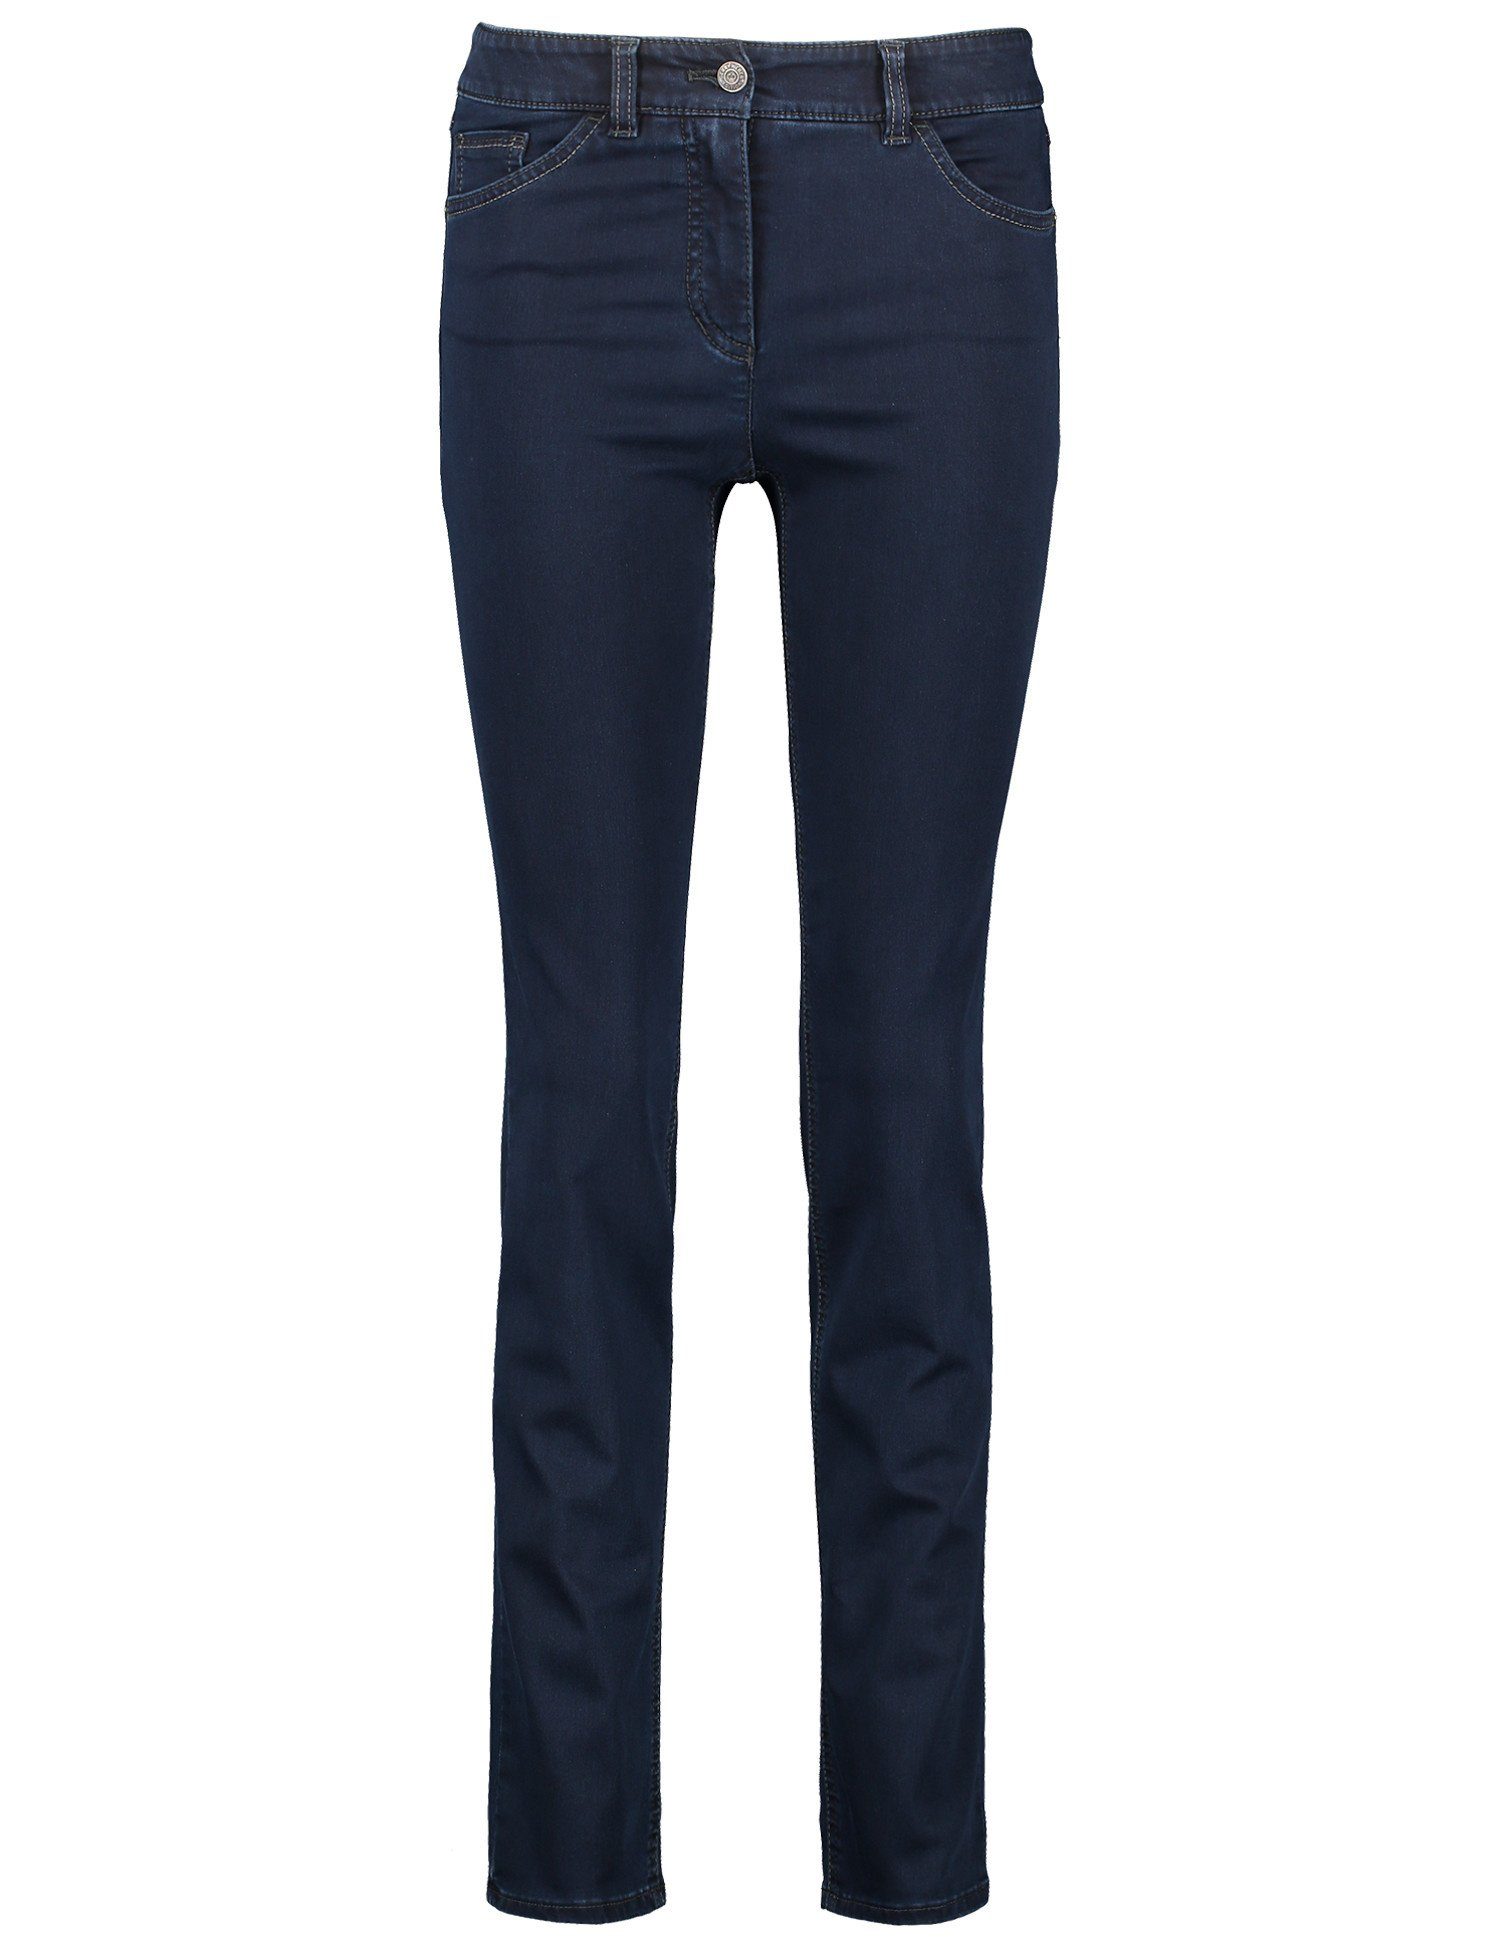 WEBER GERRY Slim-fit-Jeans Slimfit denim blue Jeans 5-pocket dark